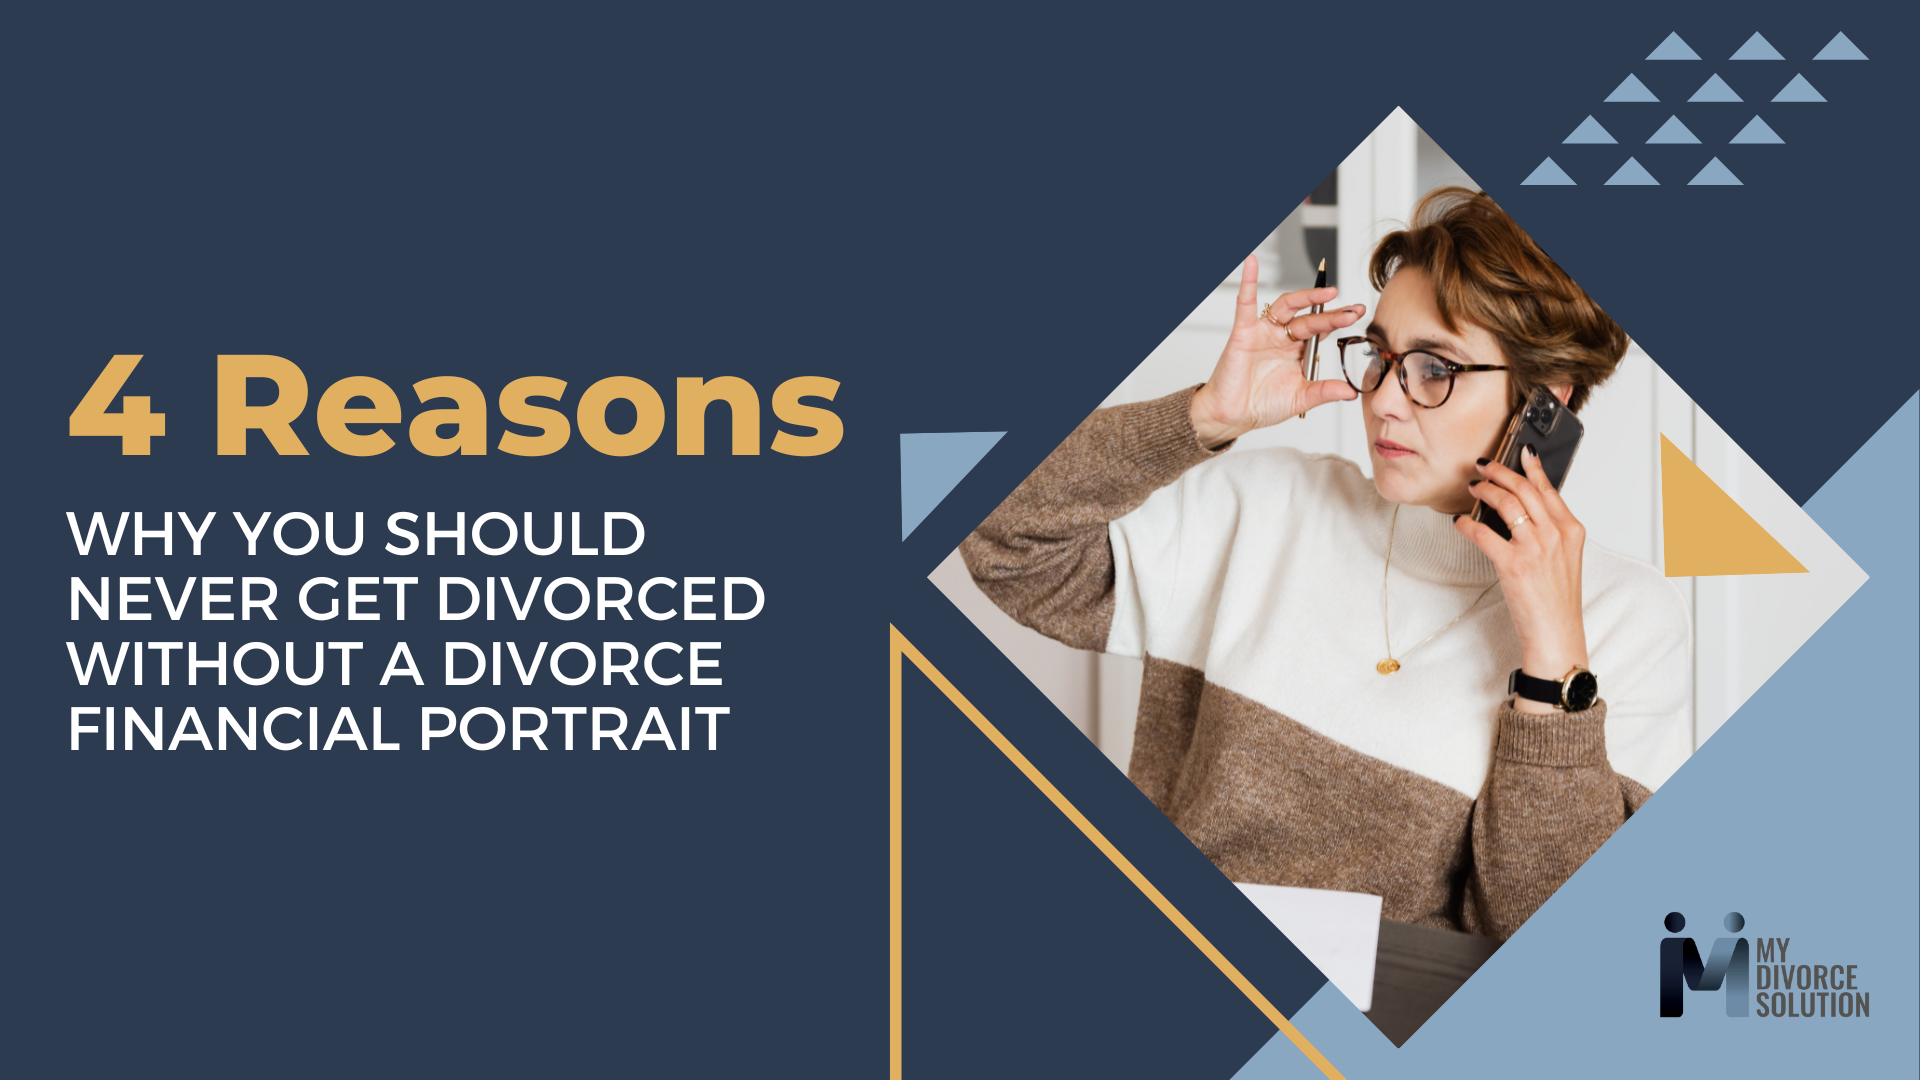 Divorce financial portrait